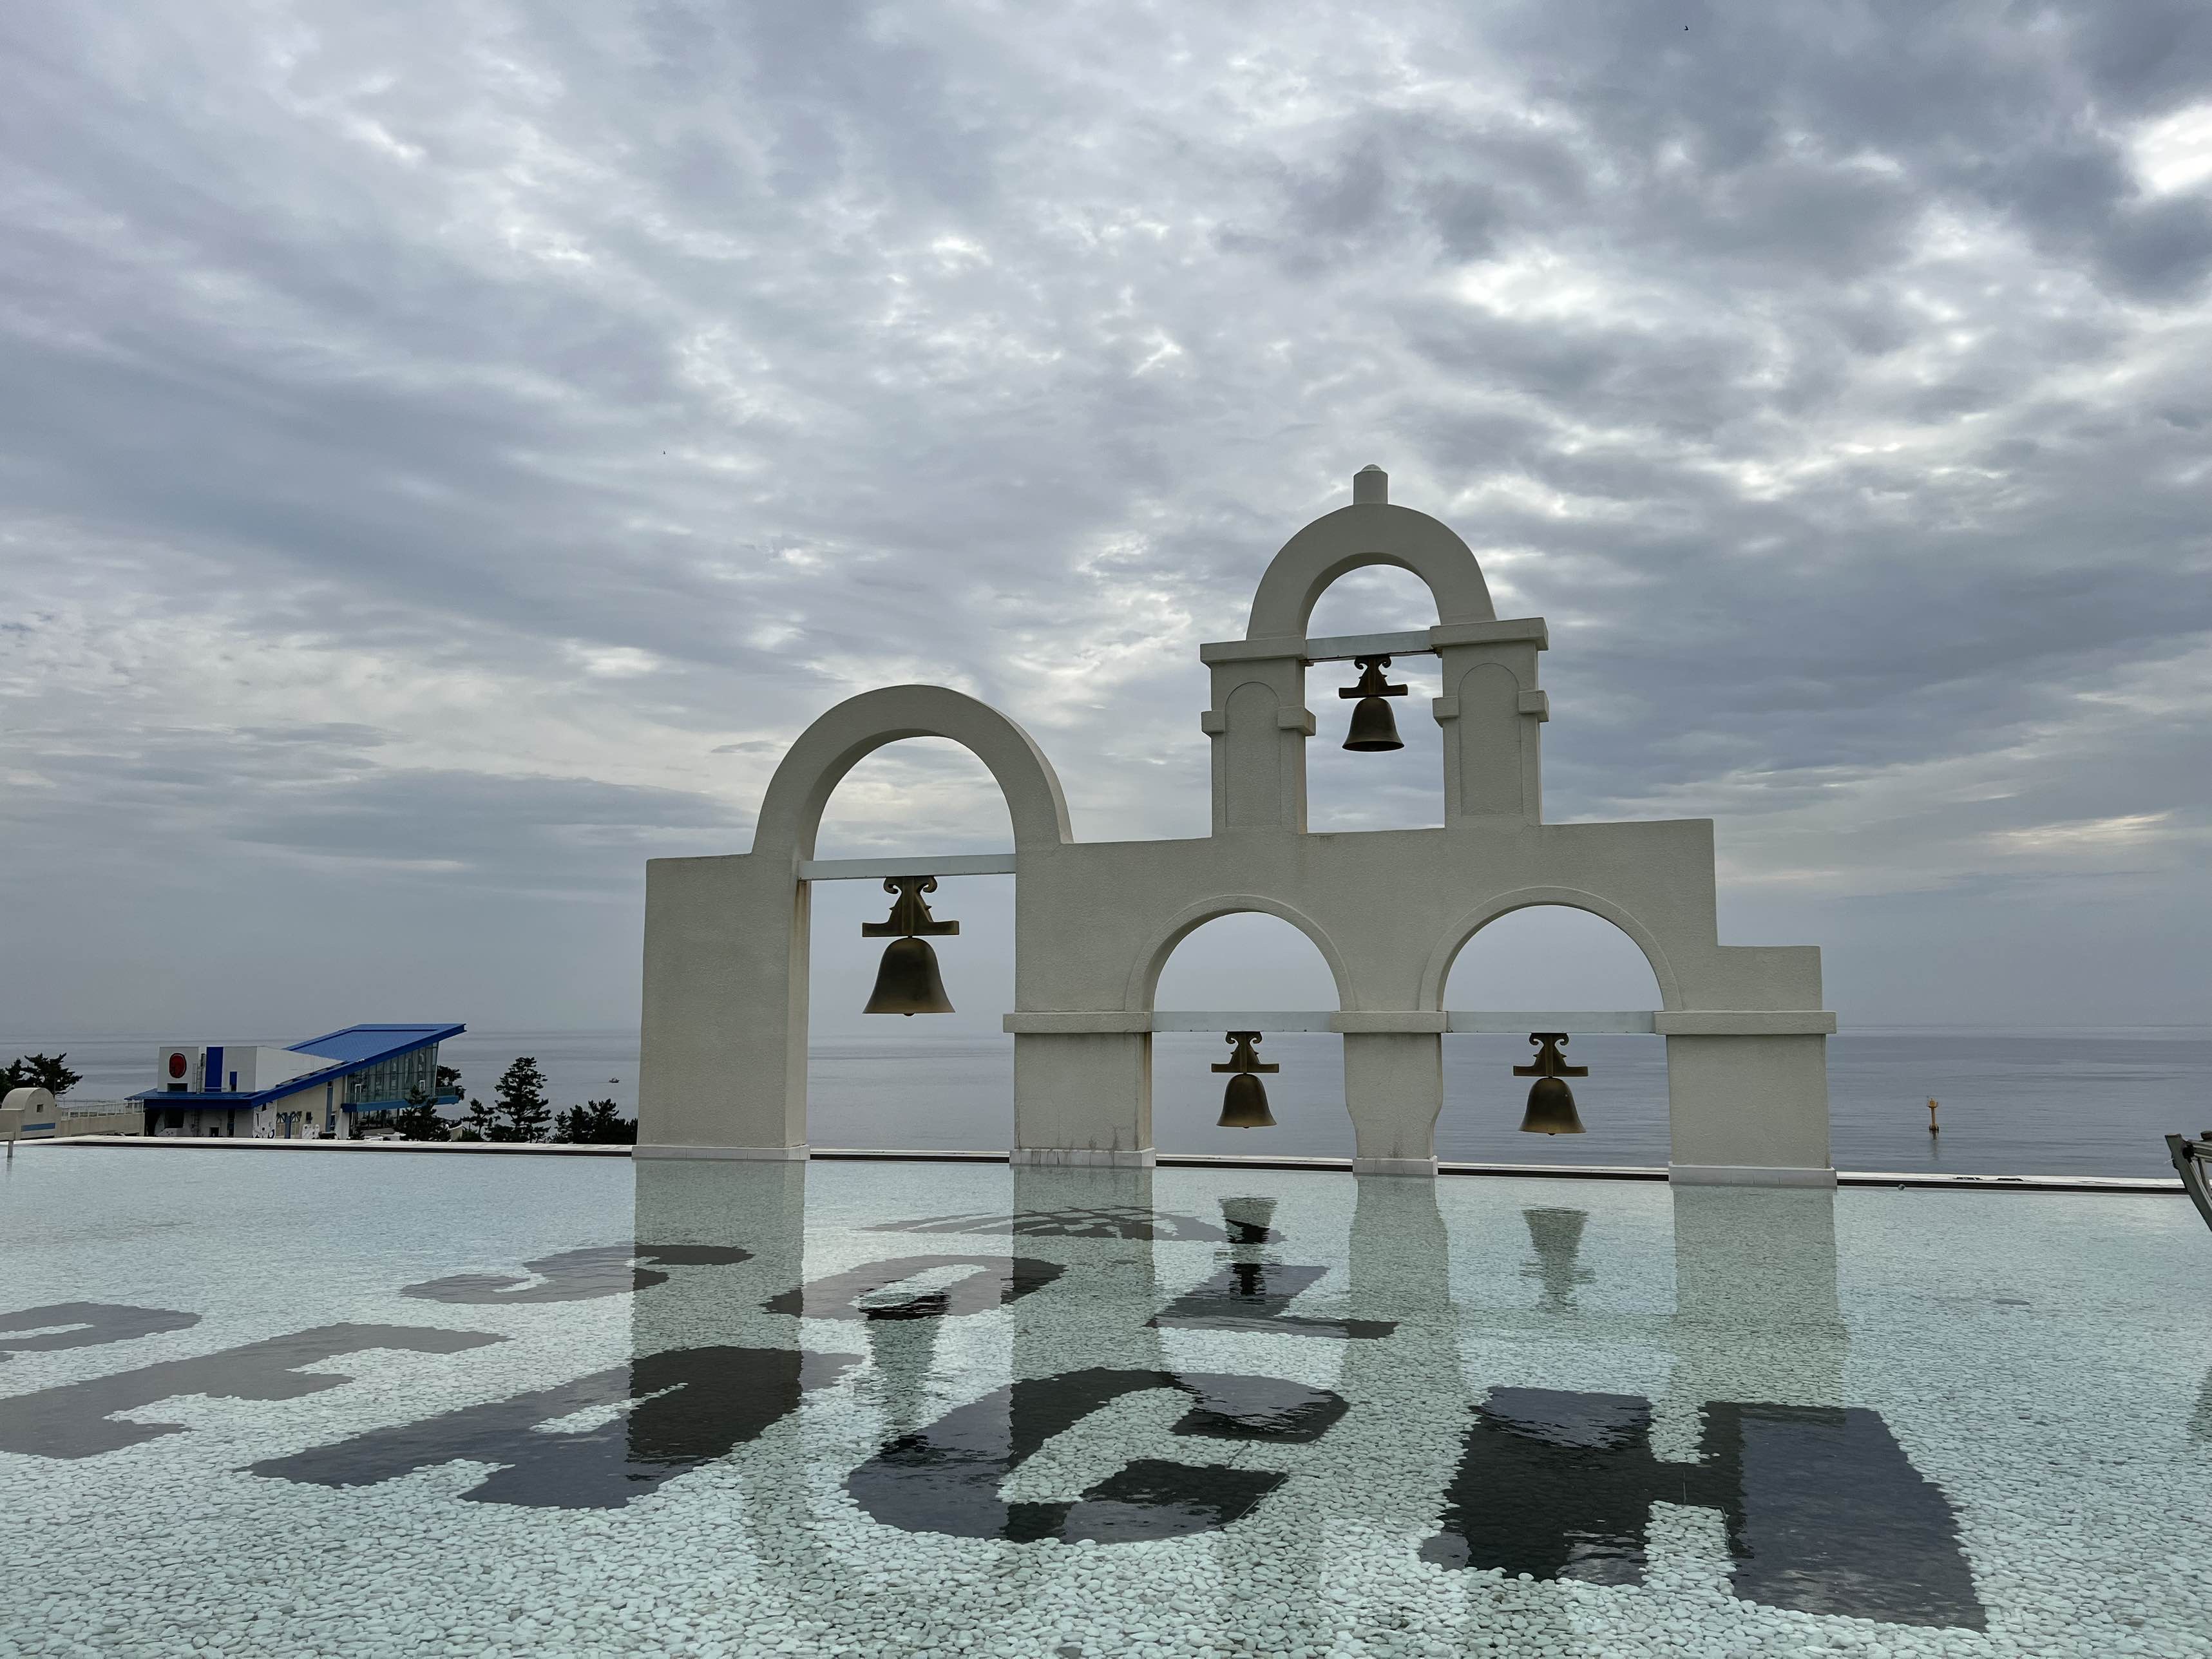 삼척 쏠비치 리조트 옥상에 있는 수영장 조형물 사진